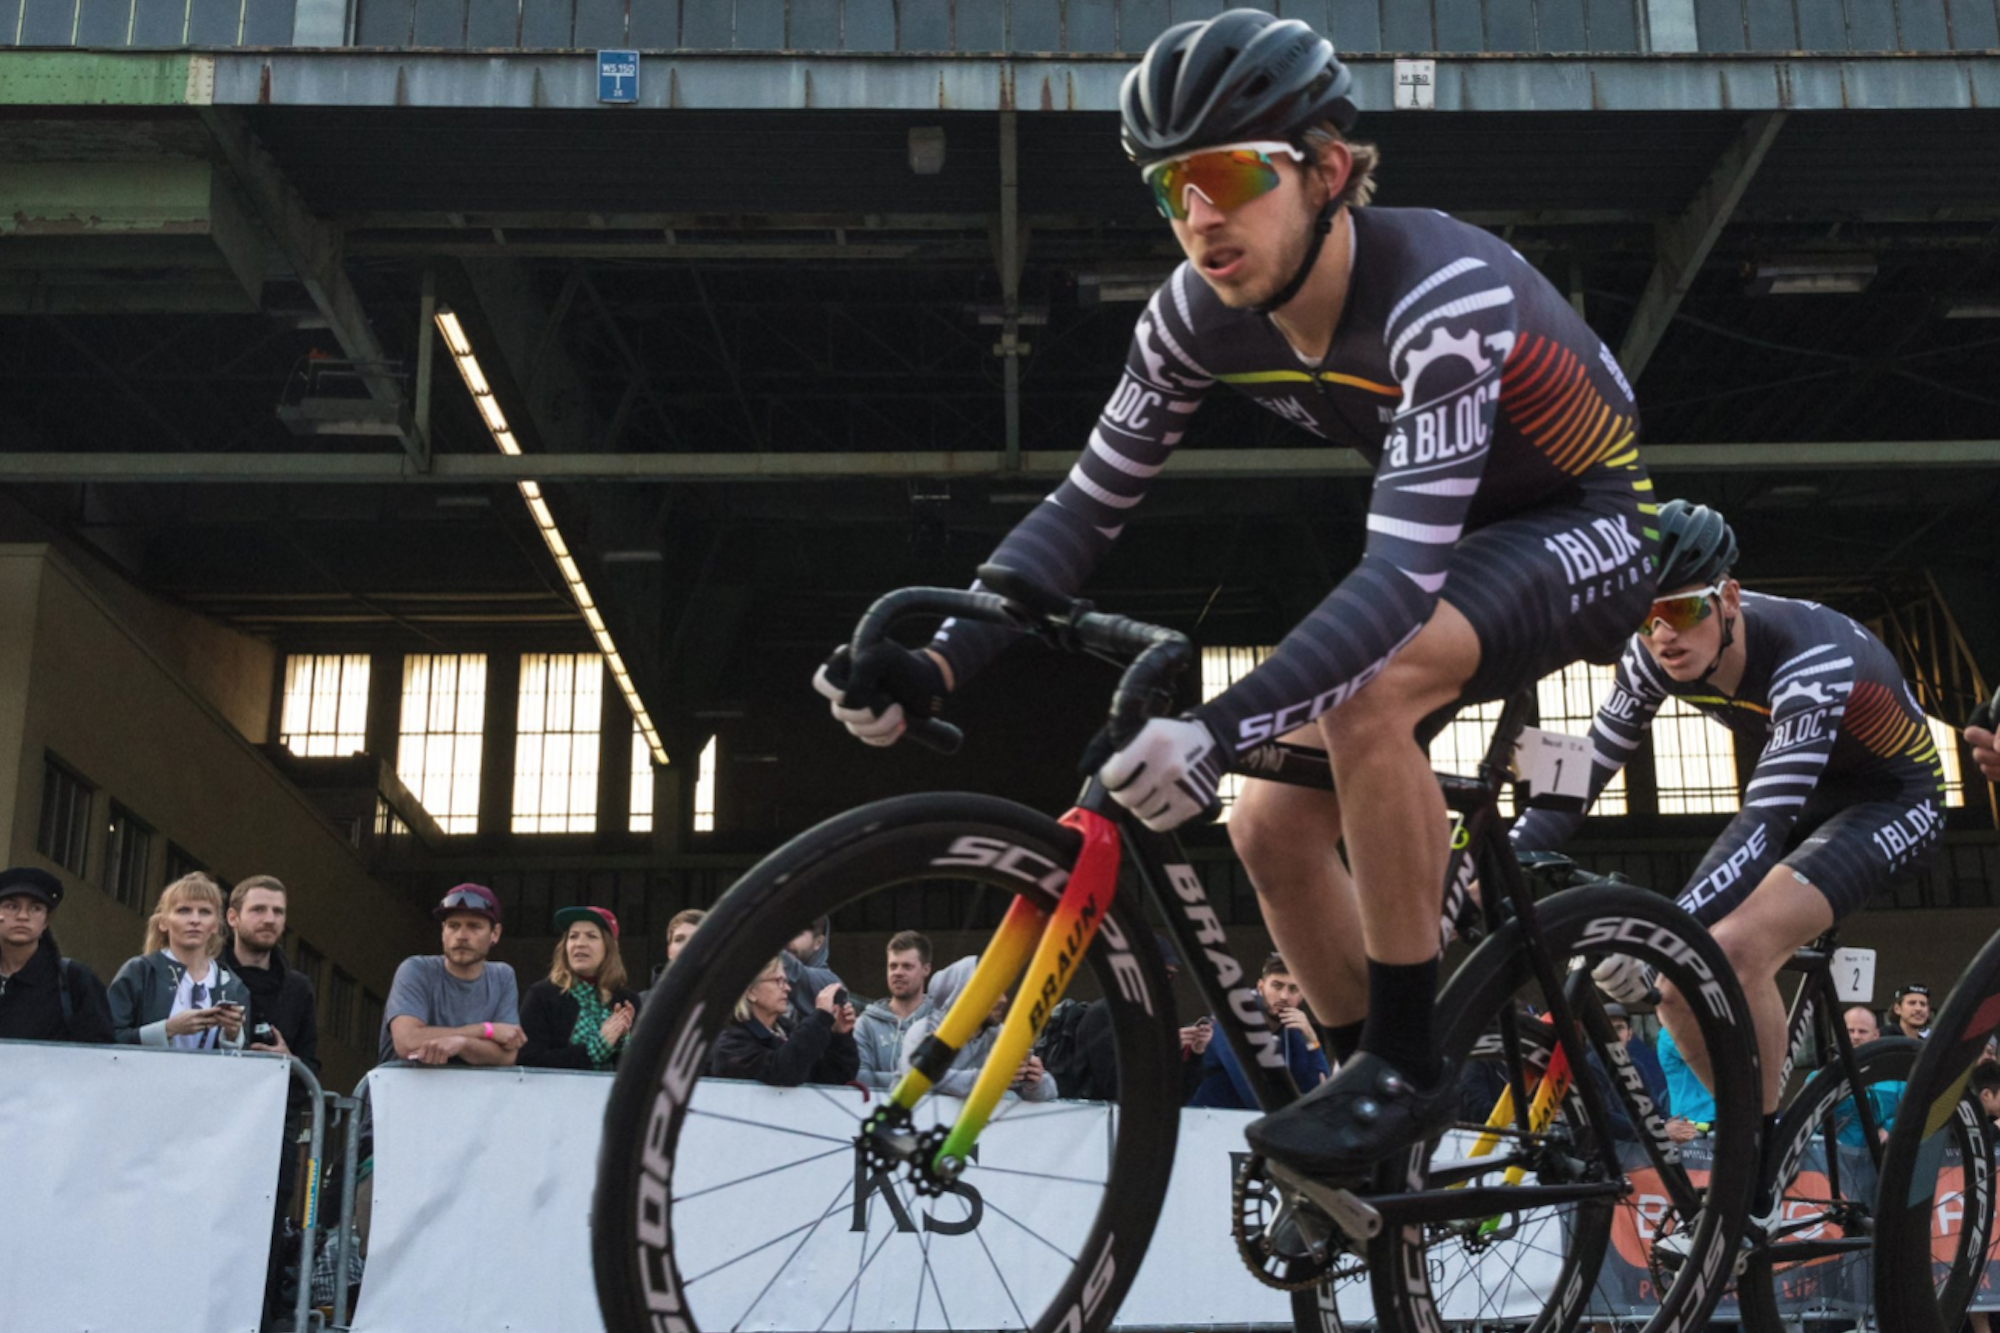 Red Hook Crit winner David van doping | Cycling Weekly